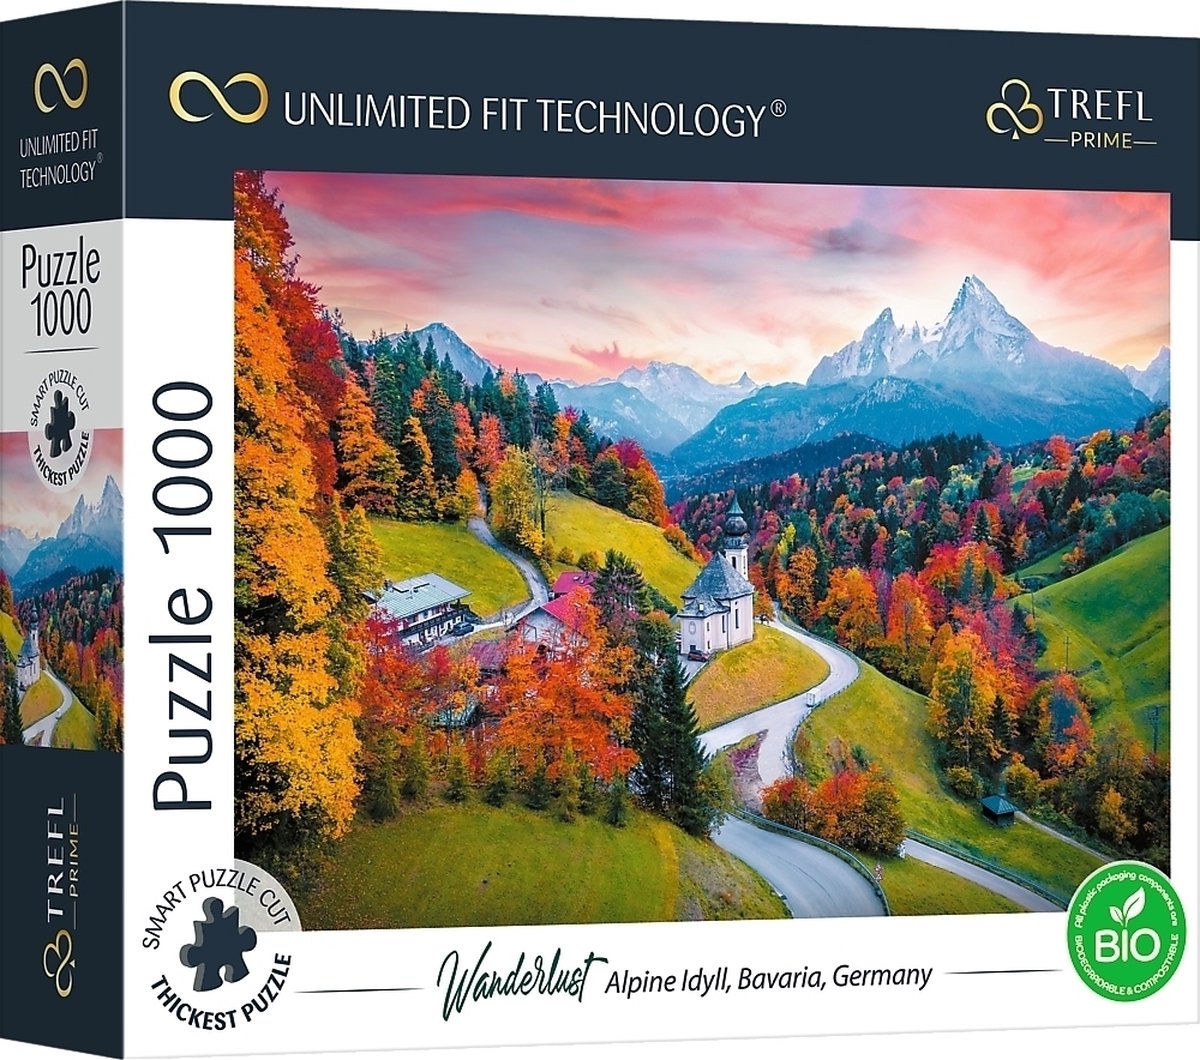 Trefl Prime Beierse Alpen puzzel - 1000 stukjes